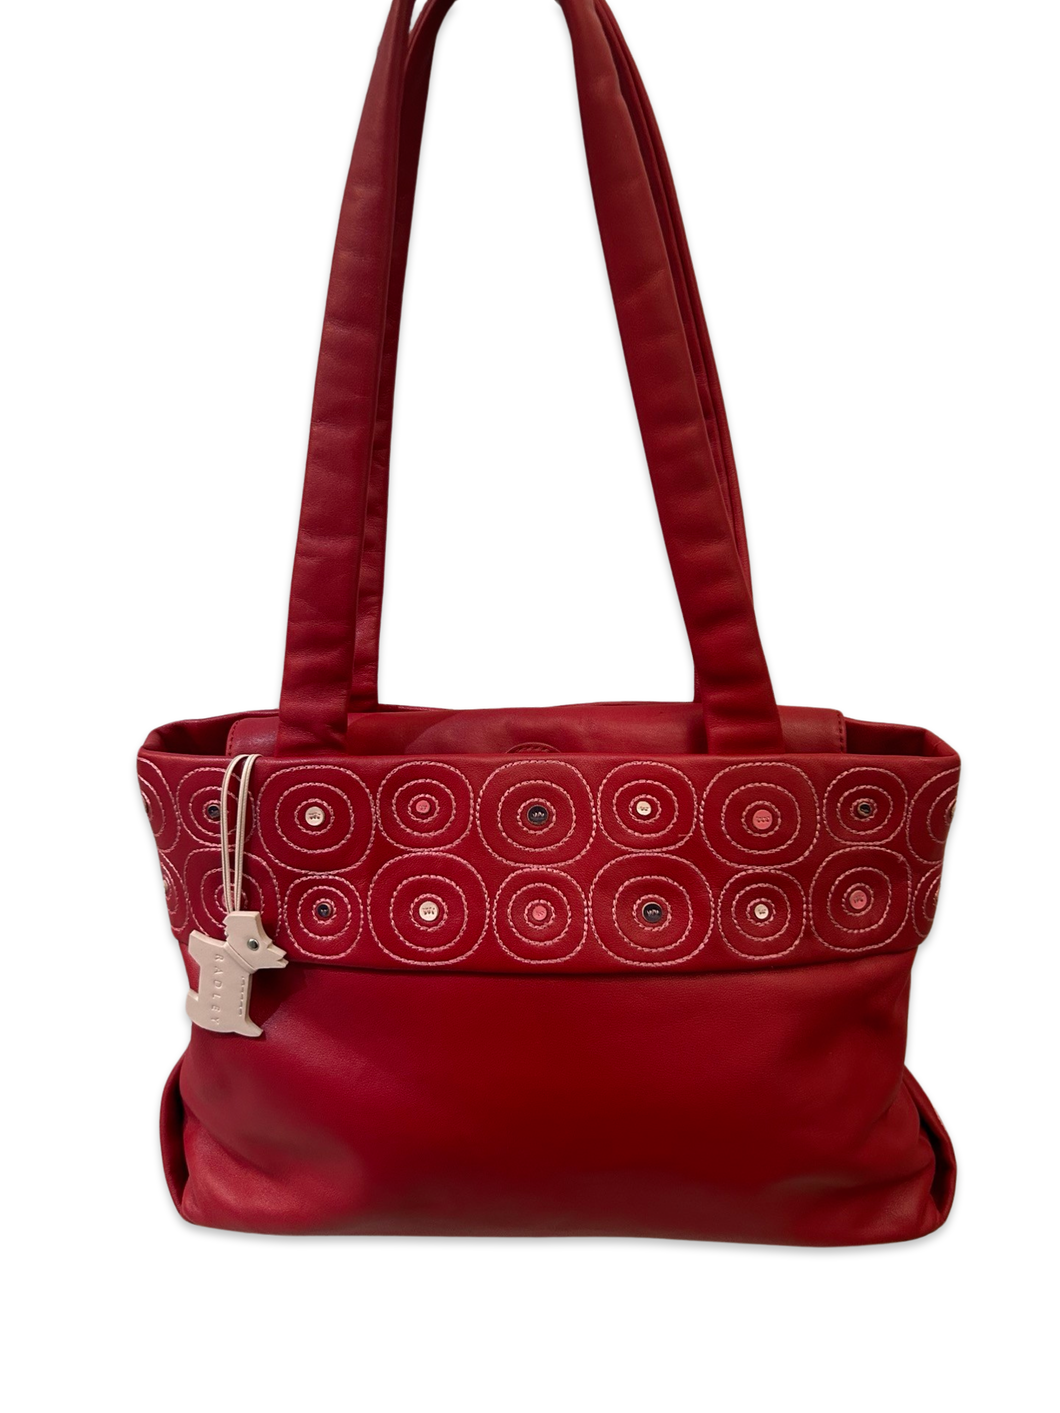 Radley Red Leather Shoulder Bag